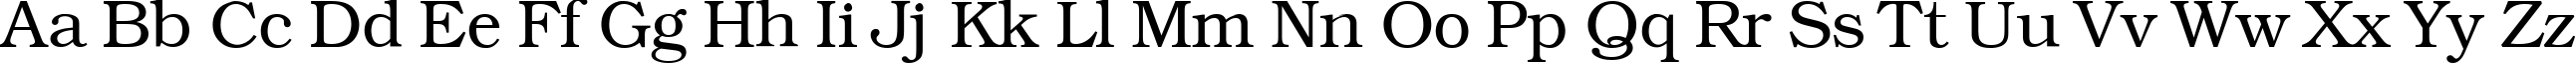 Пример написания английского алфавита шрифтом KacstBook